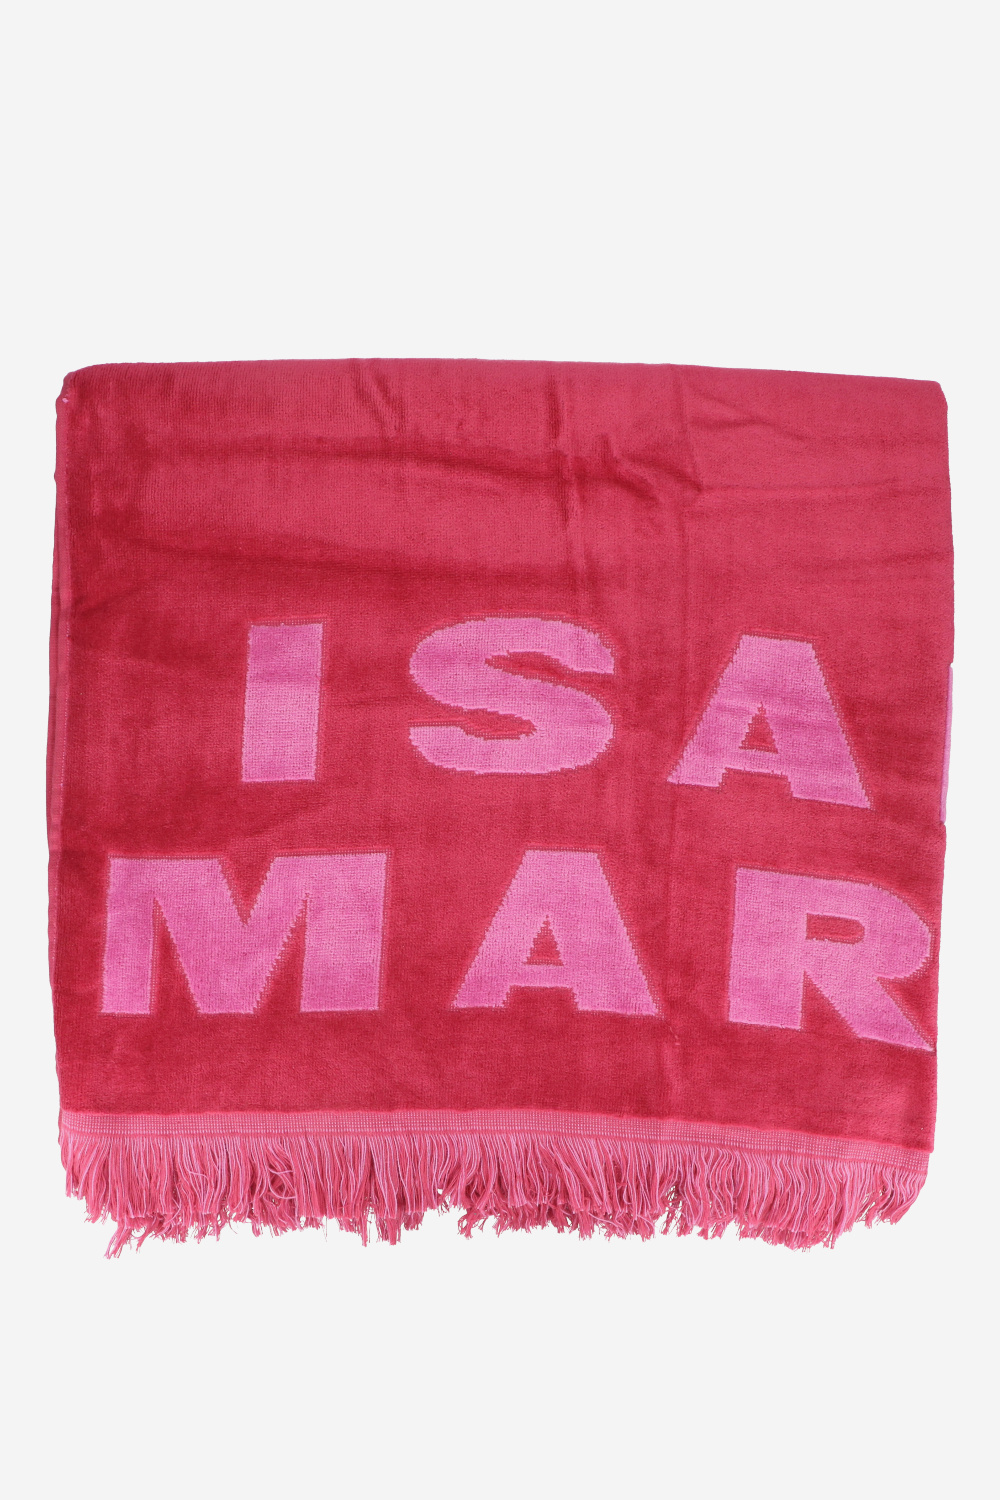 Isabel Marant Handdoeken Roze